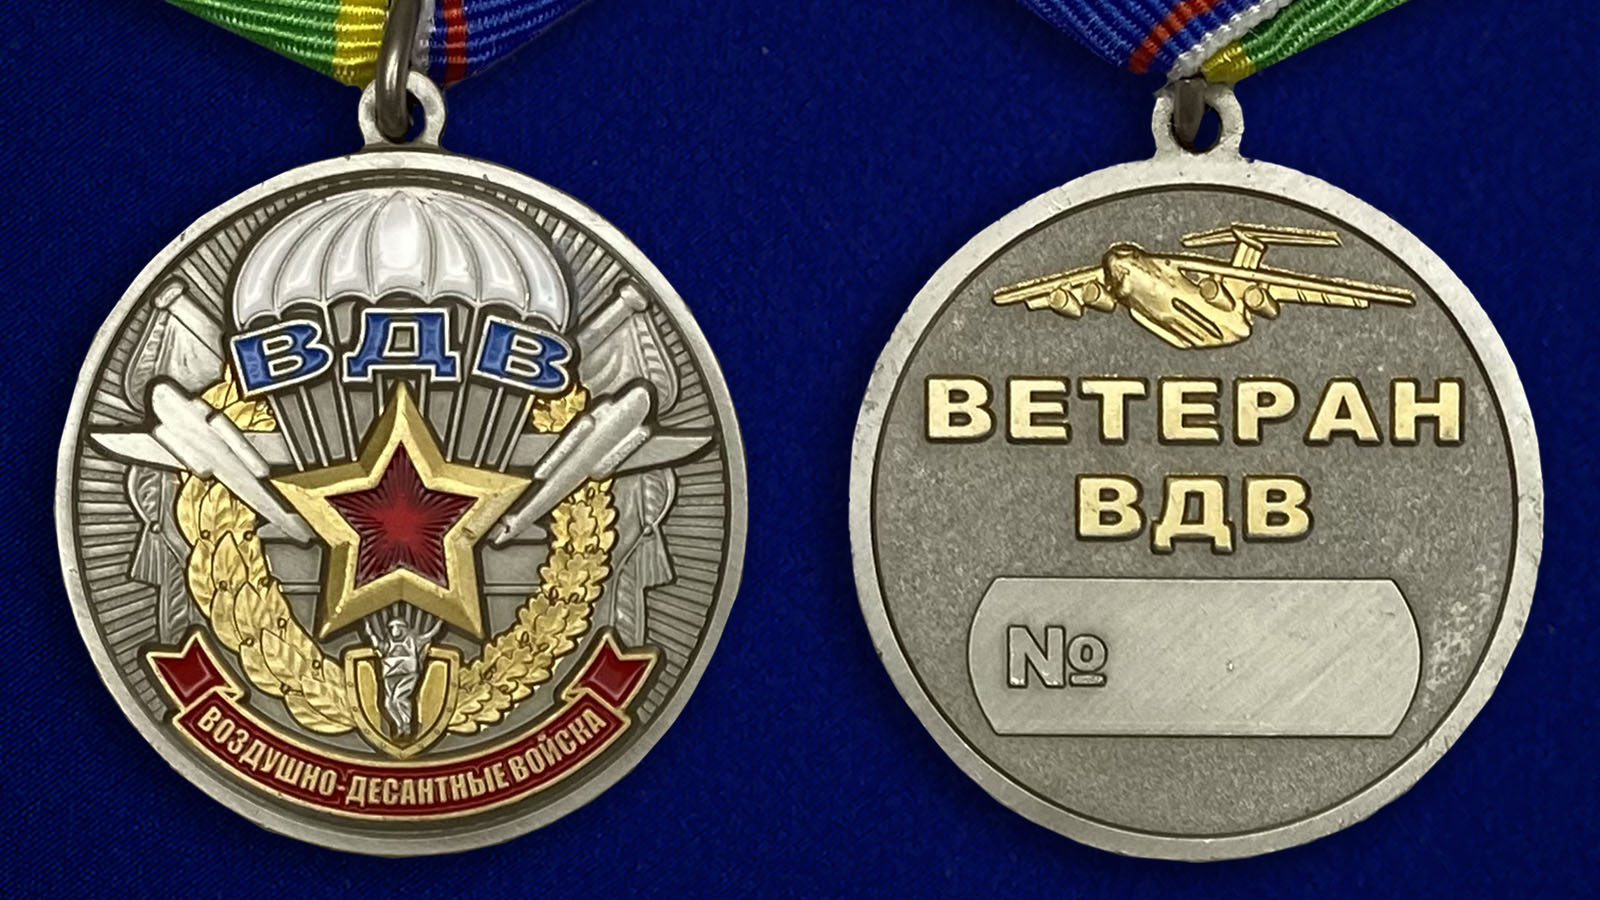 Описание медали "Ветерану воздушно-десантных войск" - аверс и реверс